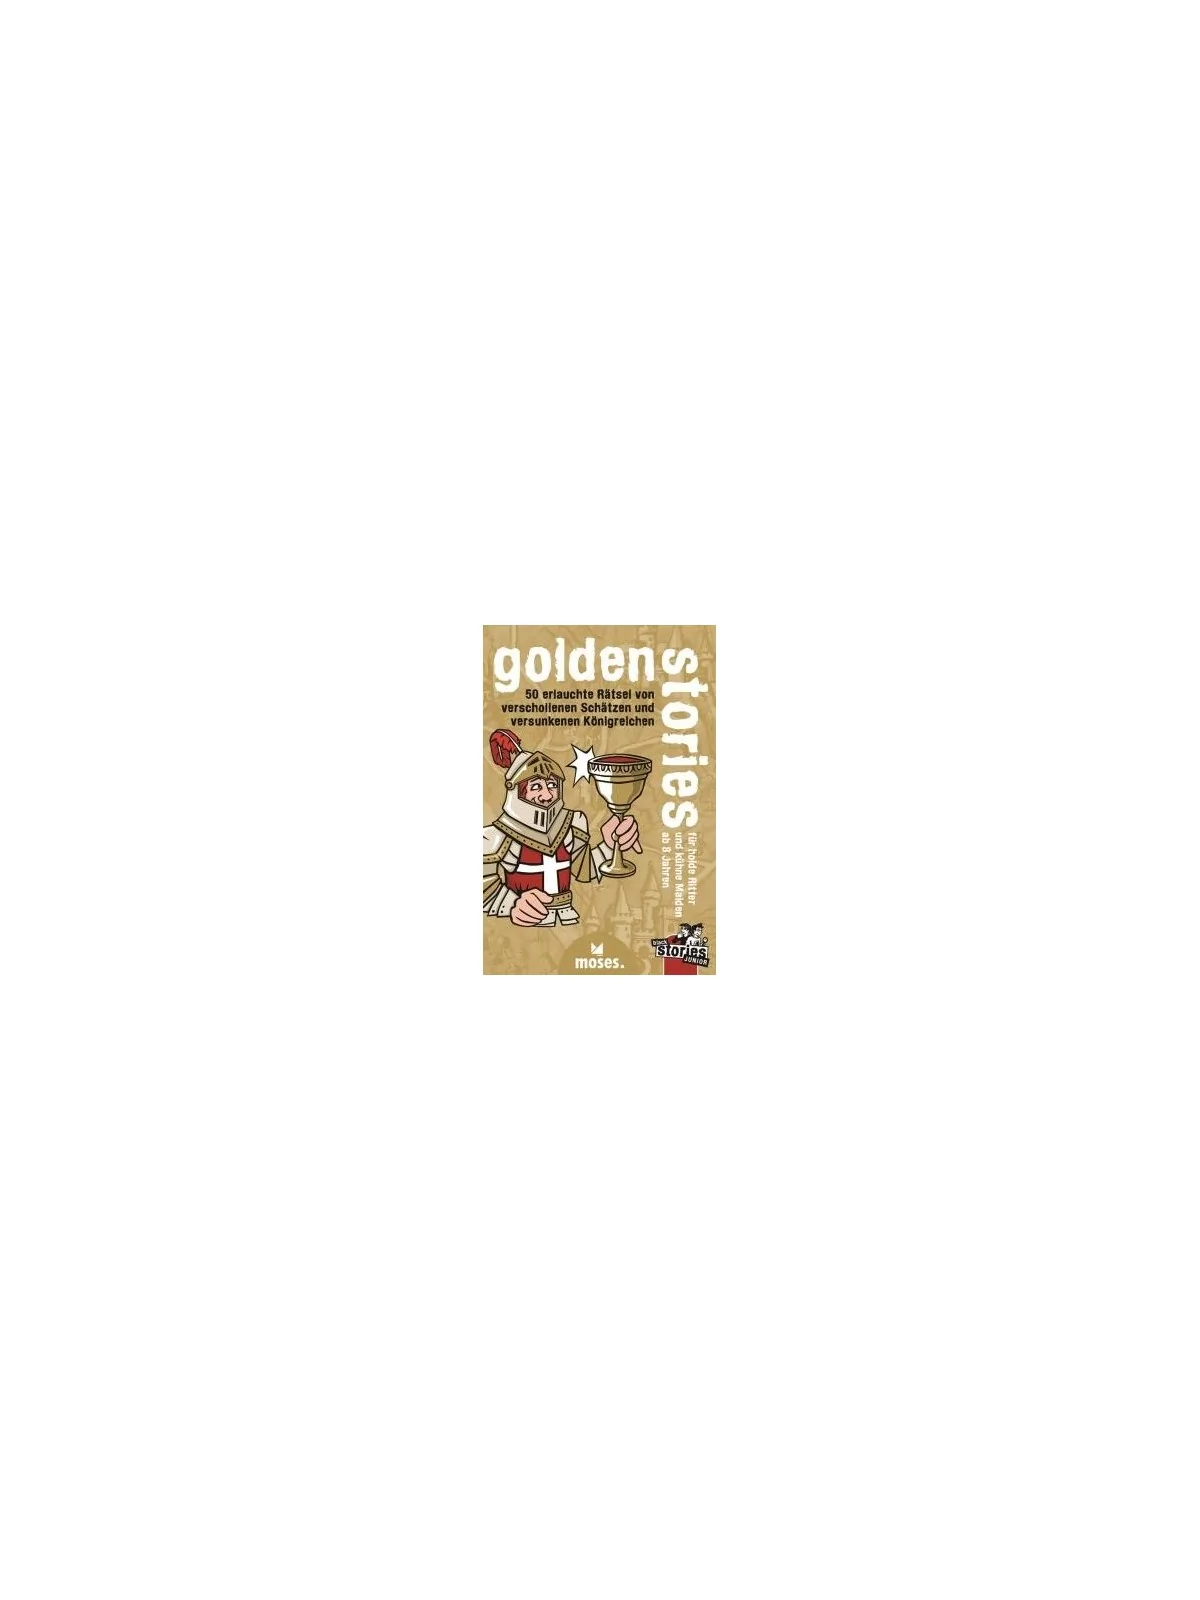 Comprar Golden Stories barato al mejor precio 11,65 € de Gen X Games